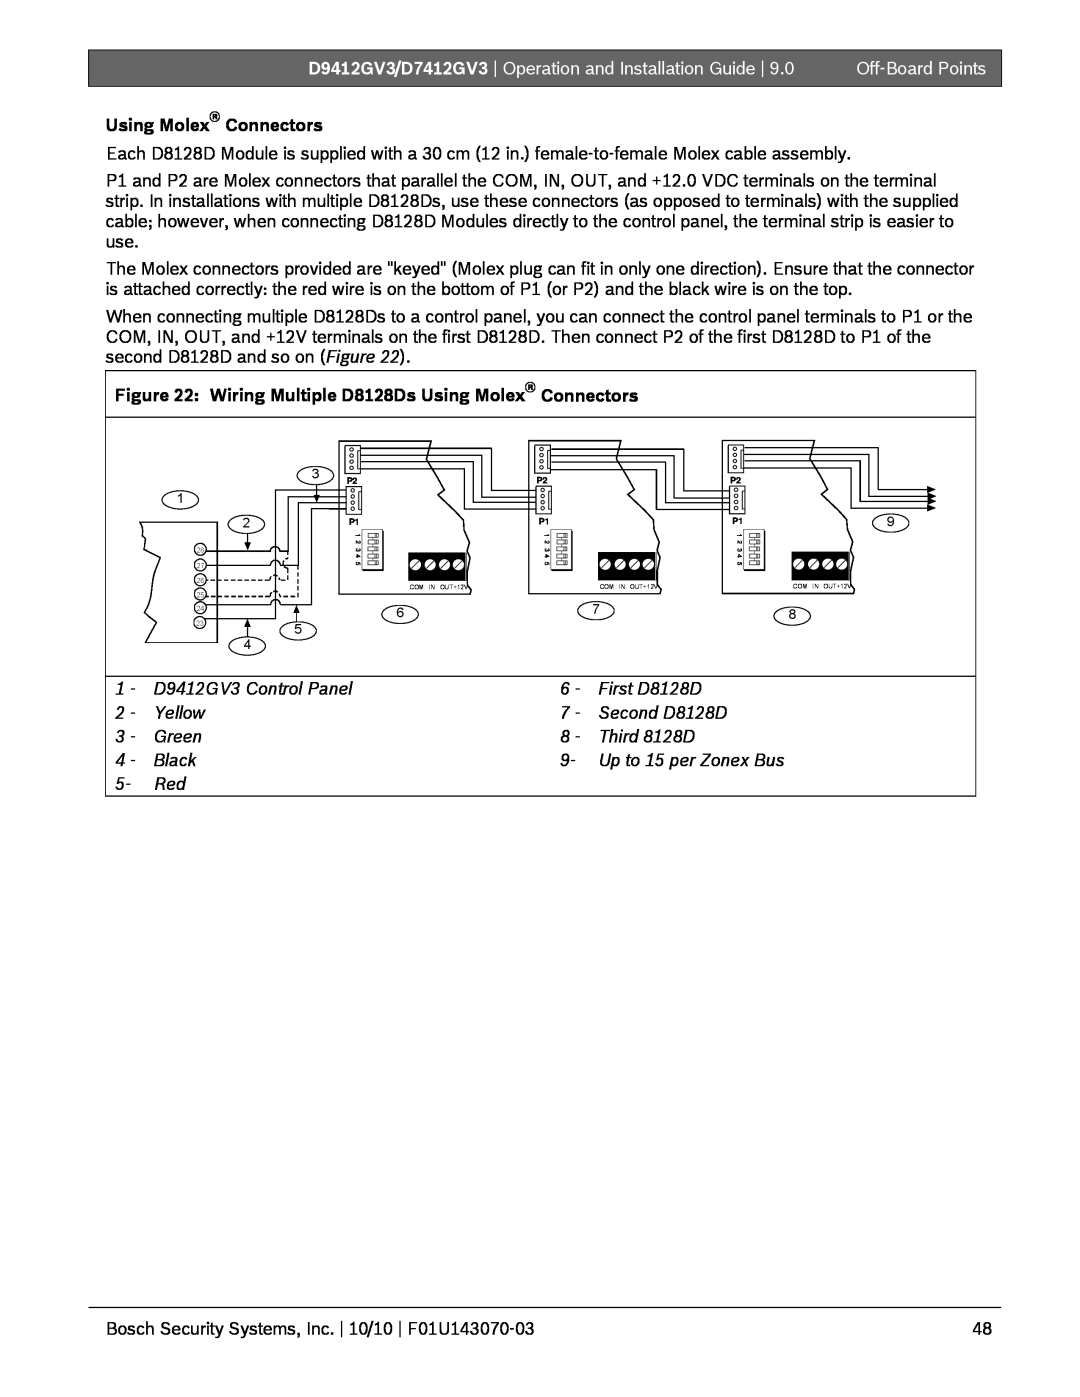 Bosch Appliances D9412GV3, D7412GV3 manual Using Molex Connectors, Off-BoardPoints 